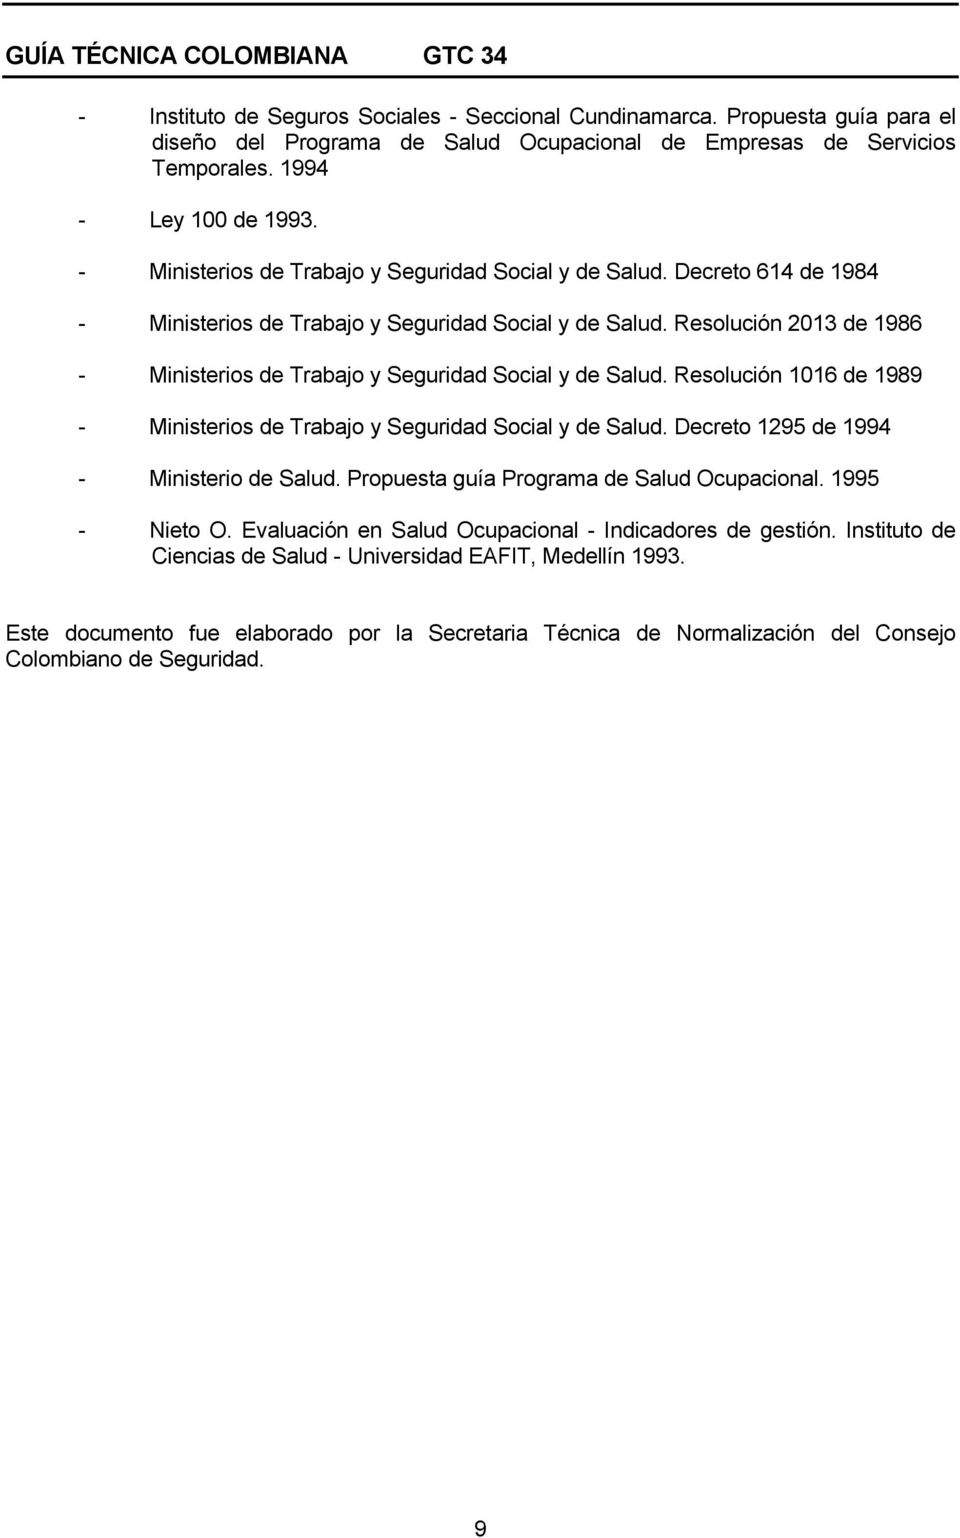 Resolución 2013 de 1986 - Ministerios de Trabajo y Seguridad Social y de Salud. Resolución 1016 de 1989 - Ministerios de Trabajo y Seguridad Social y de Salud.